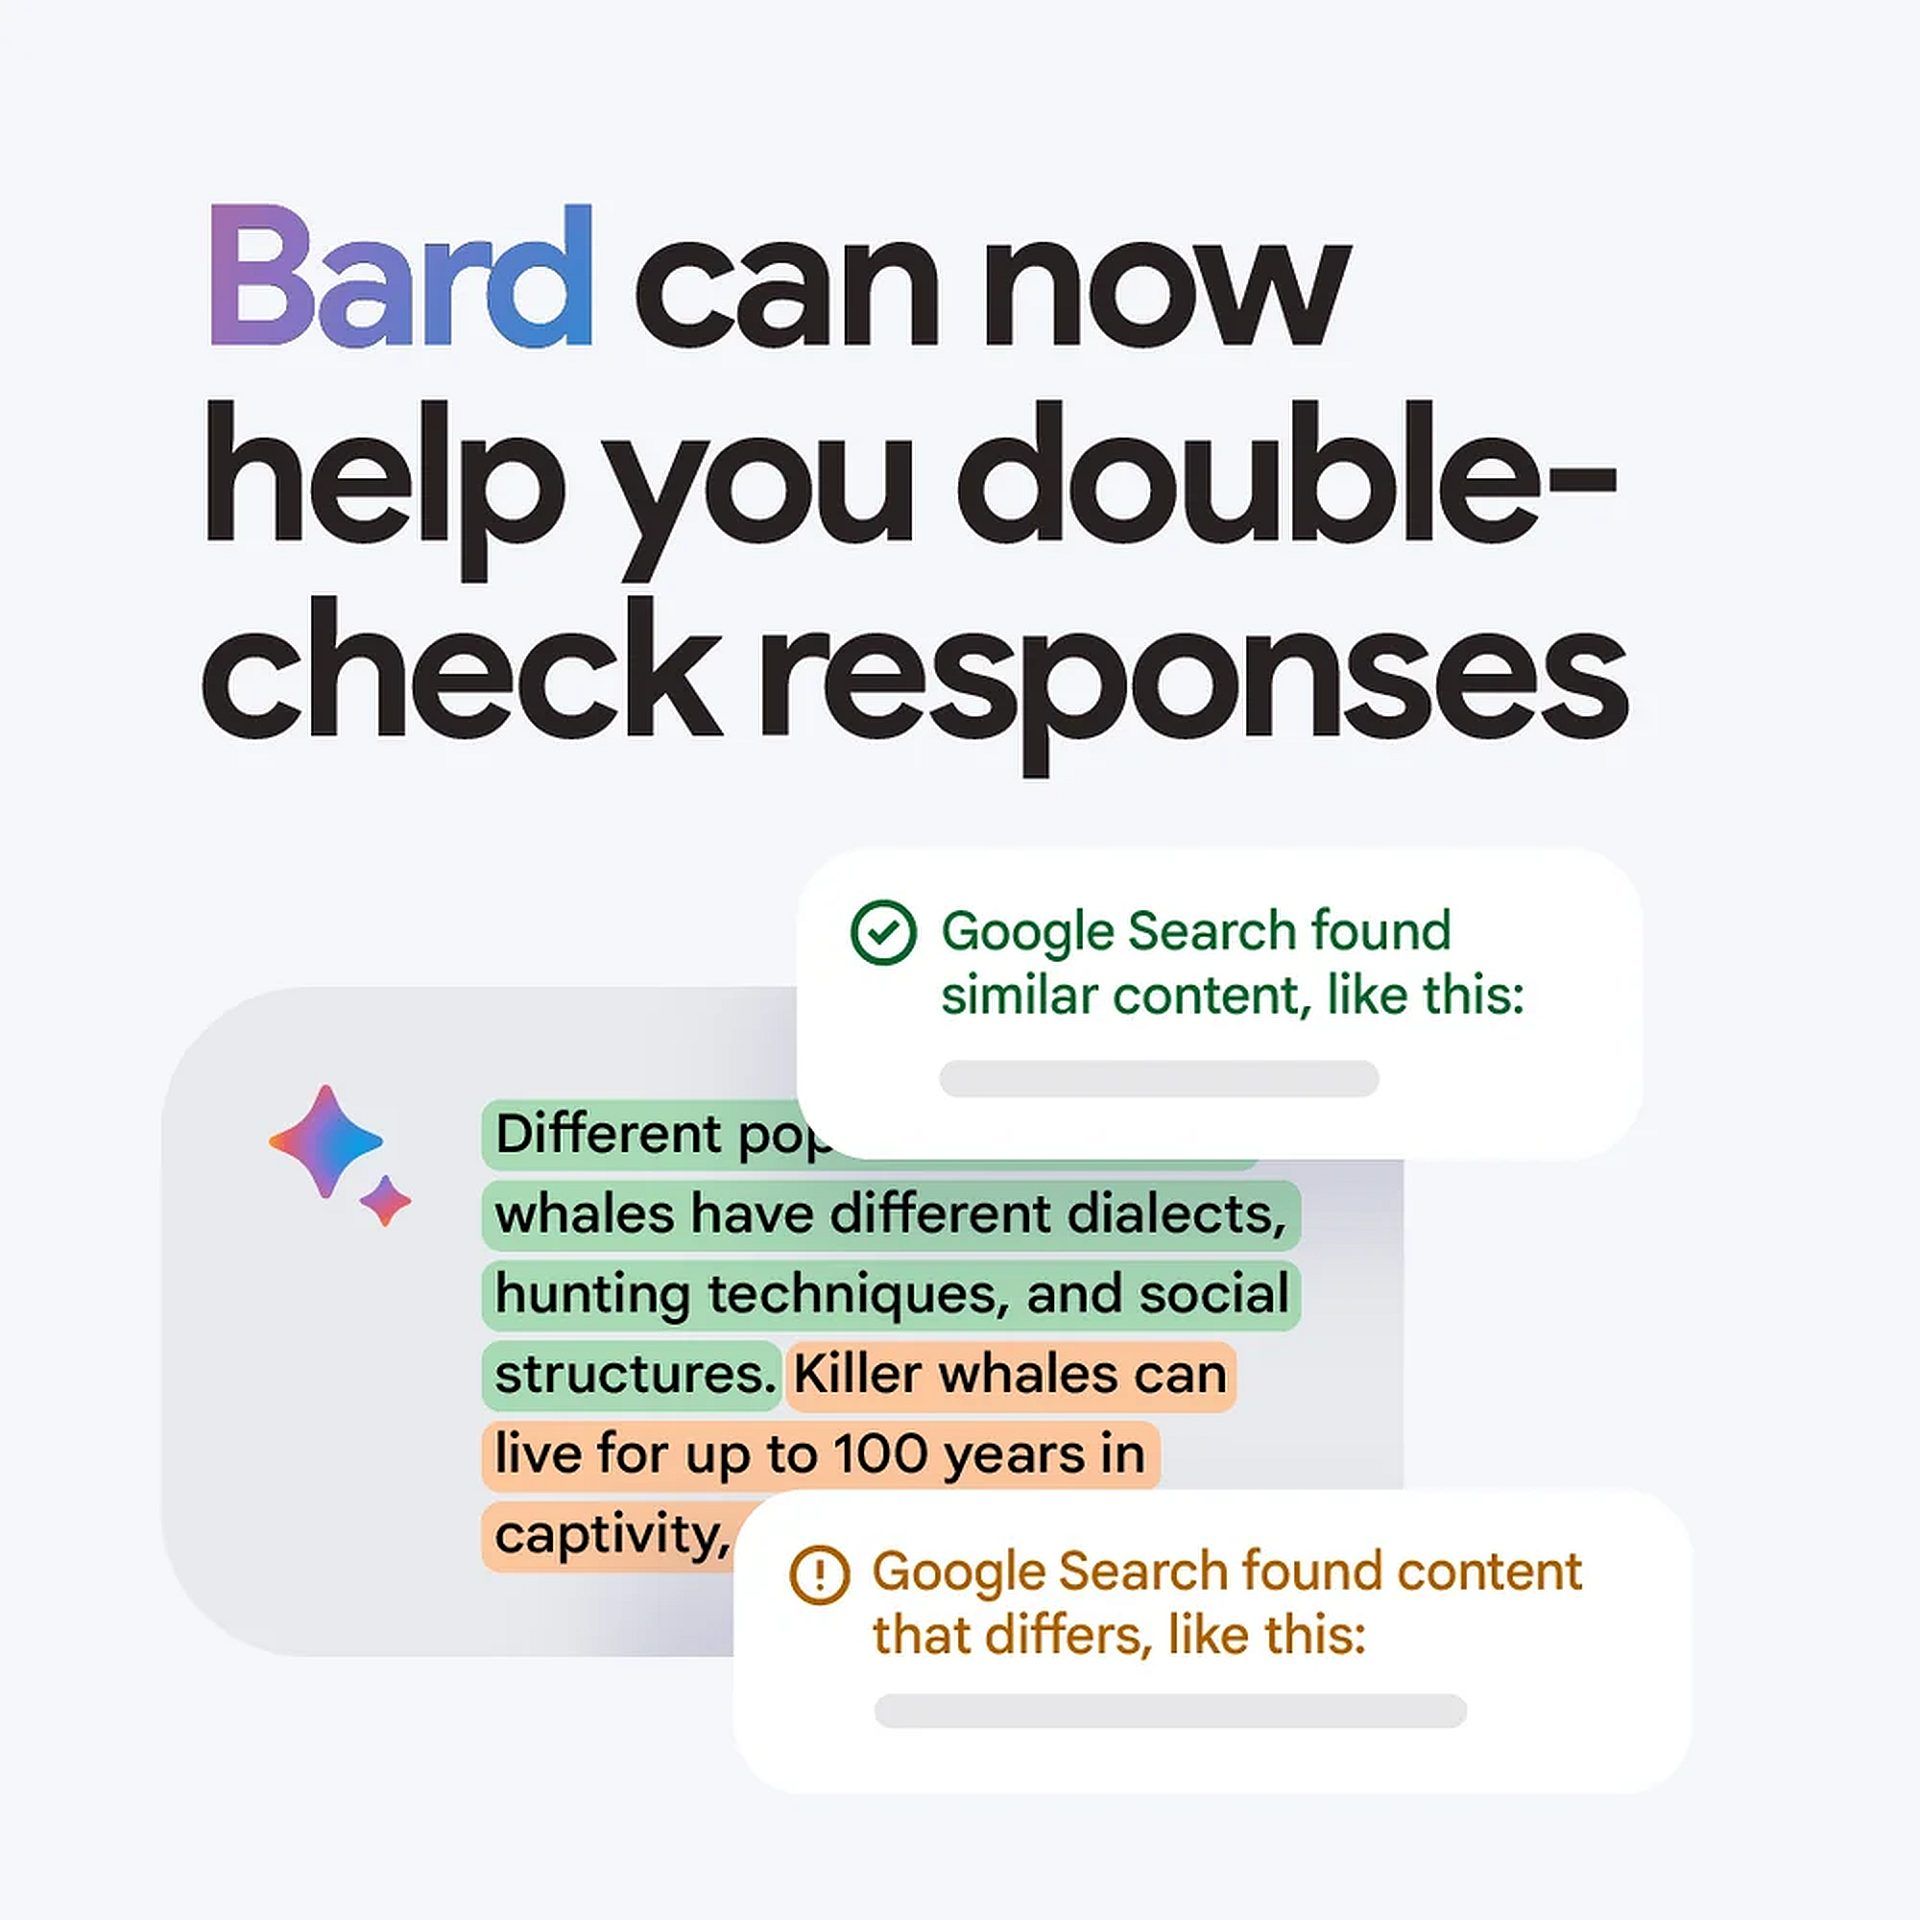 Como usar as extensões do Google Bard: eleve a colaboração com o Google apps & servicesa e saiba o que fazer se as extensões do Google Bard não funcionarem.